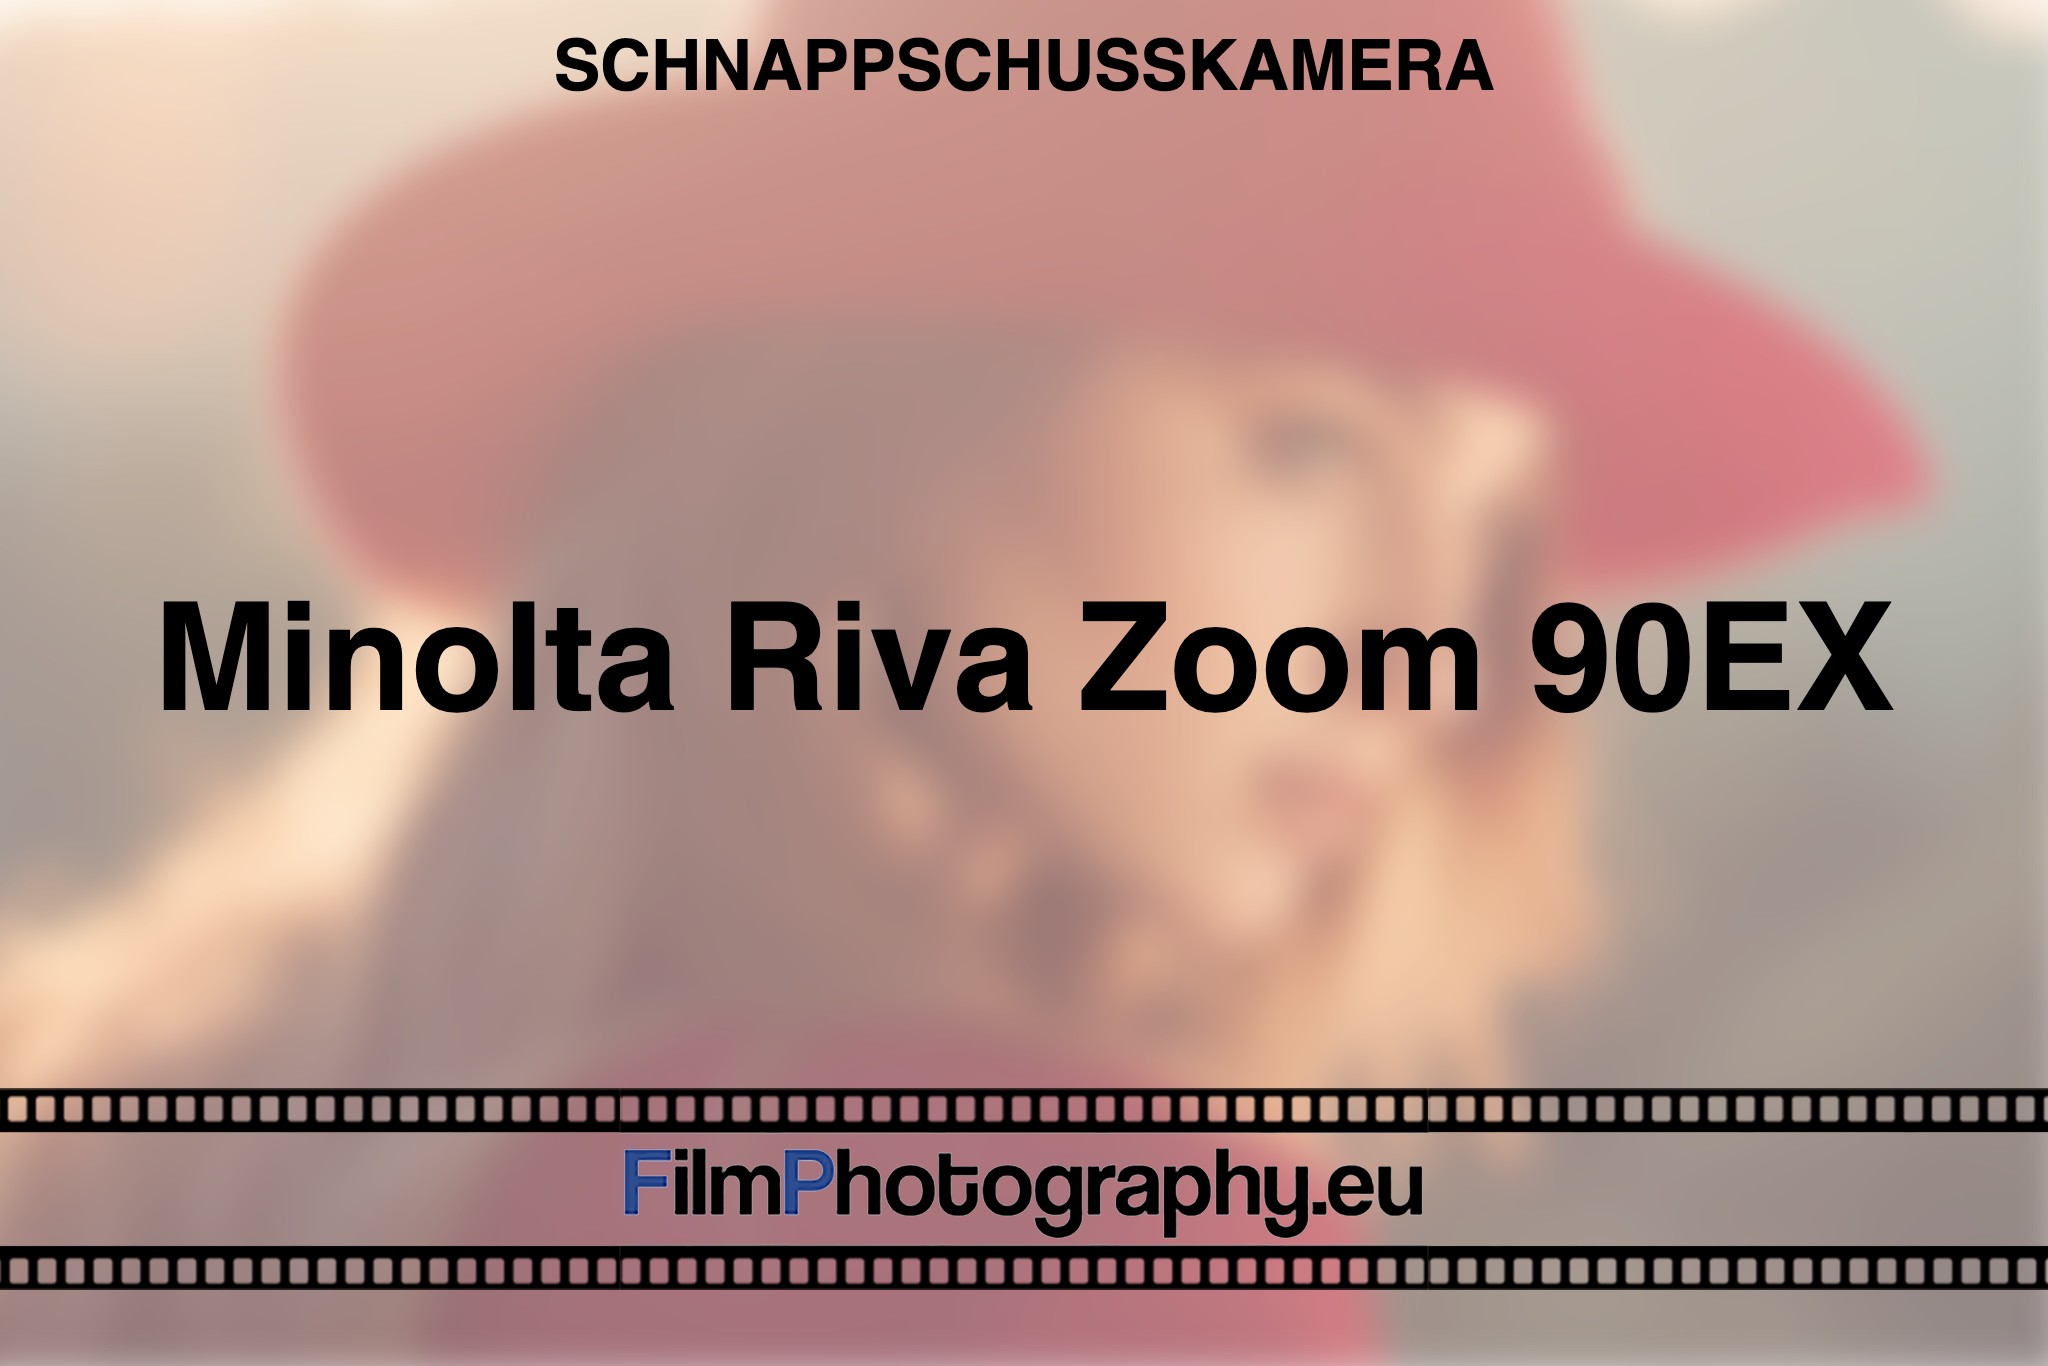 minolta-riva-zoom-90ex-schnappschusskamera-bnv